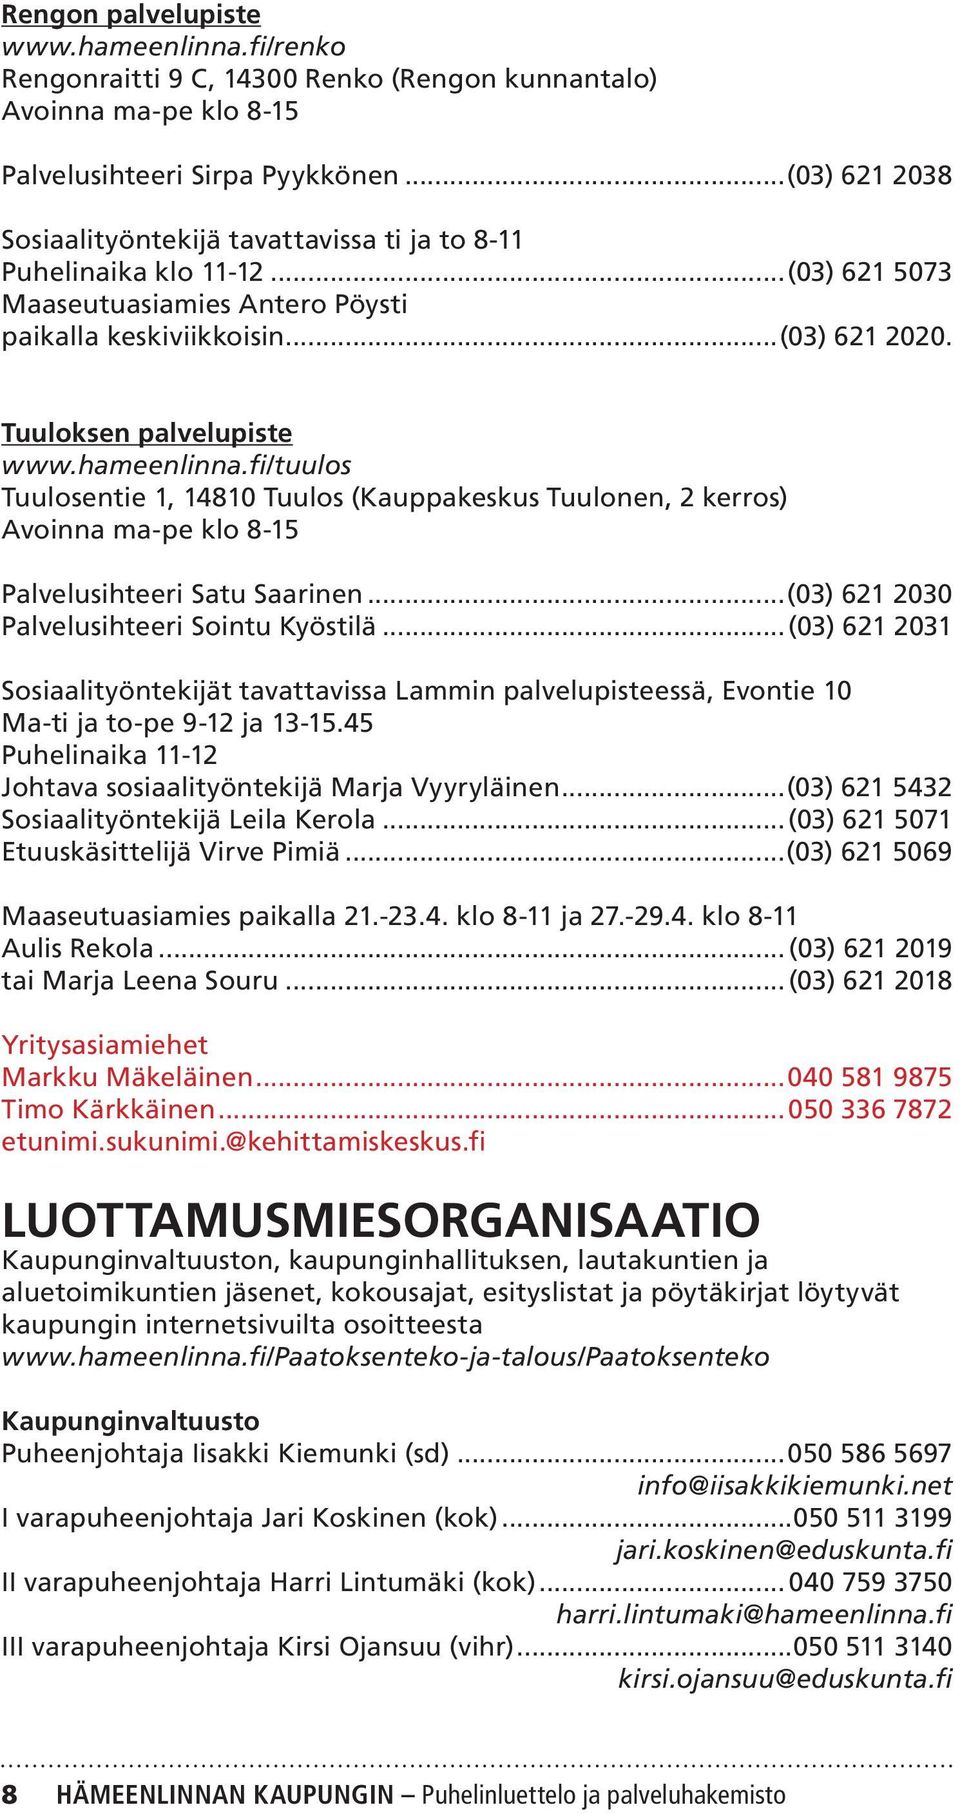 hameenlinna.fi/tuulos Tuulosentie 1, 14810 Tuulos (Kauppakeskus Tuulonen, 2 kerros) Avoinna ma-pe klo 8-15 Palvelusihteeri Satu Saarinen...(03) 621 2030 Palvelusihteeri Sointu Kyöstilä.